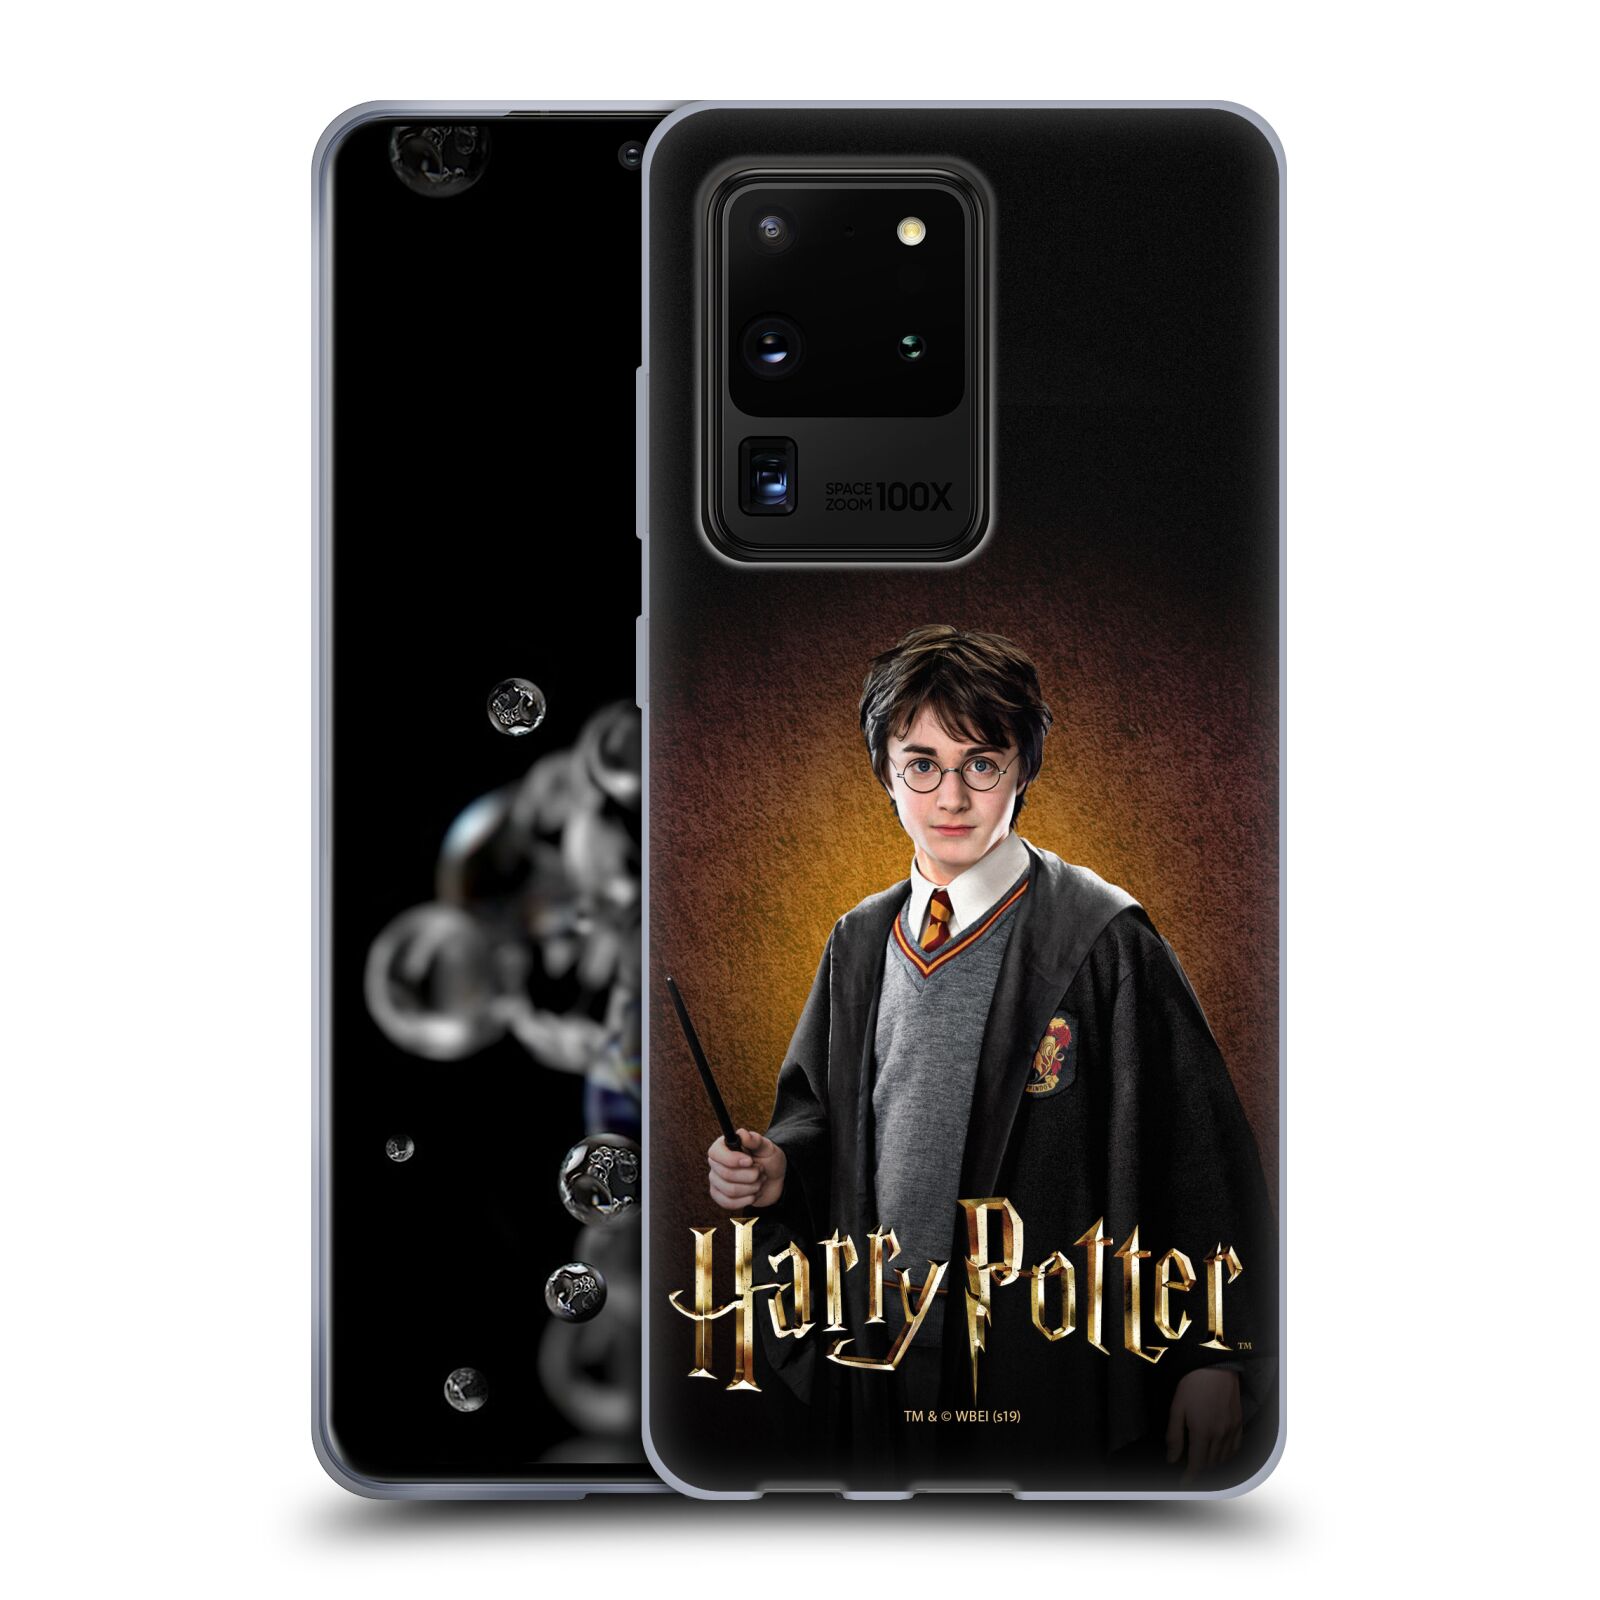 Silikonové pouzdro na mobil Samsung Galaxy S20 Ultra - Harry Potter - Malý Harry Potter (Silikonový kryt, obal, pouzdro na mobilní telefon Samsung Galaxy S20 Ultra s licencovaným motivem Harry Potter - Malý Harry Potter)